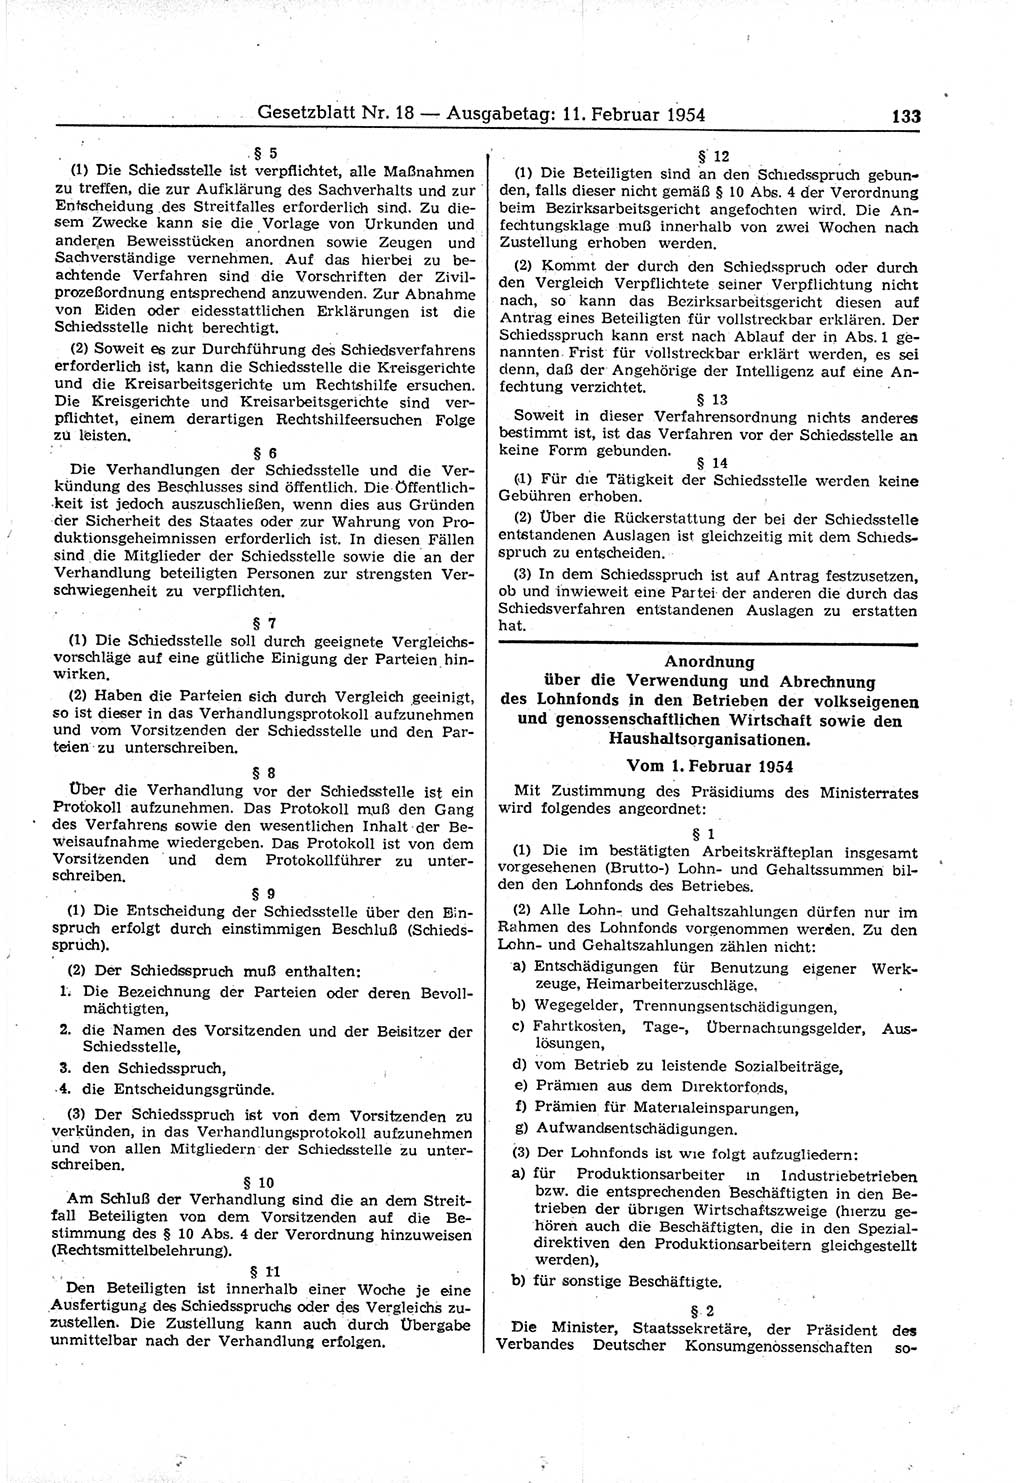 Gesetzblatt (GBl.) der Deutschen Demokratischen Republik (DDR) 1954, Seite 133 (GBl. DDR 1954, S. 133)